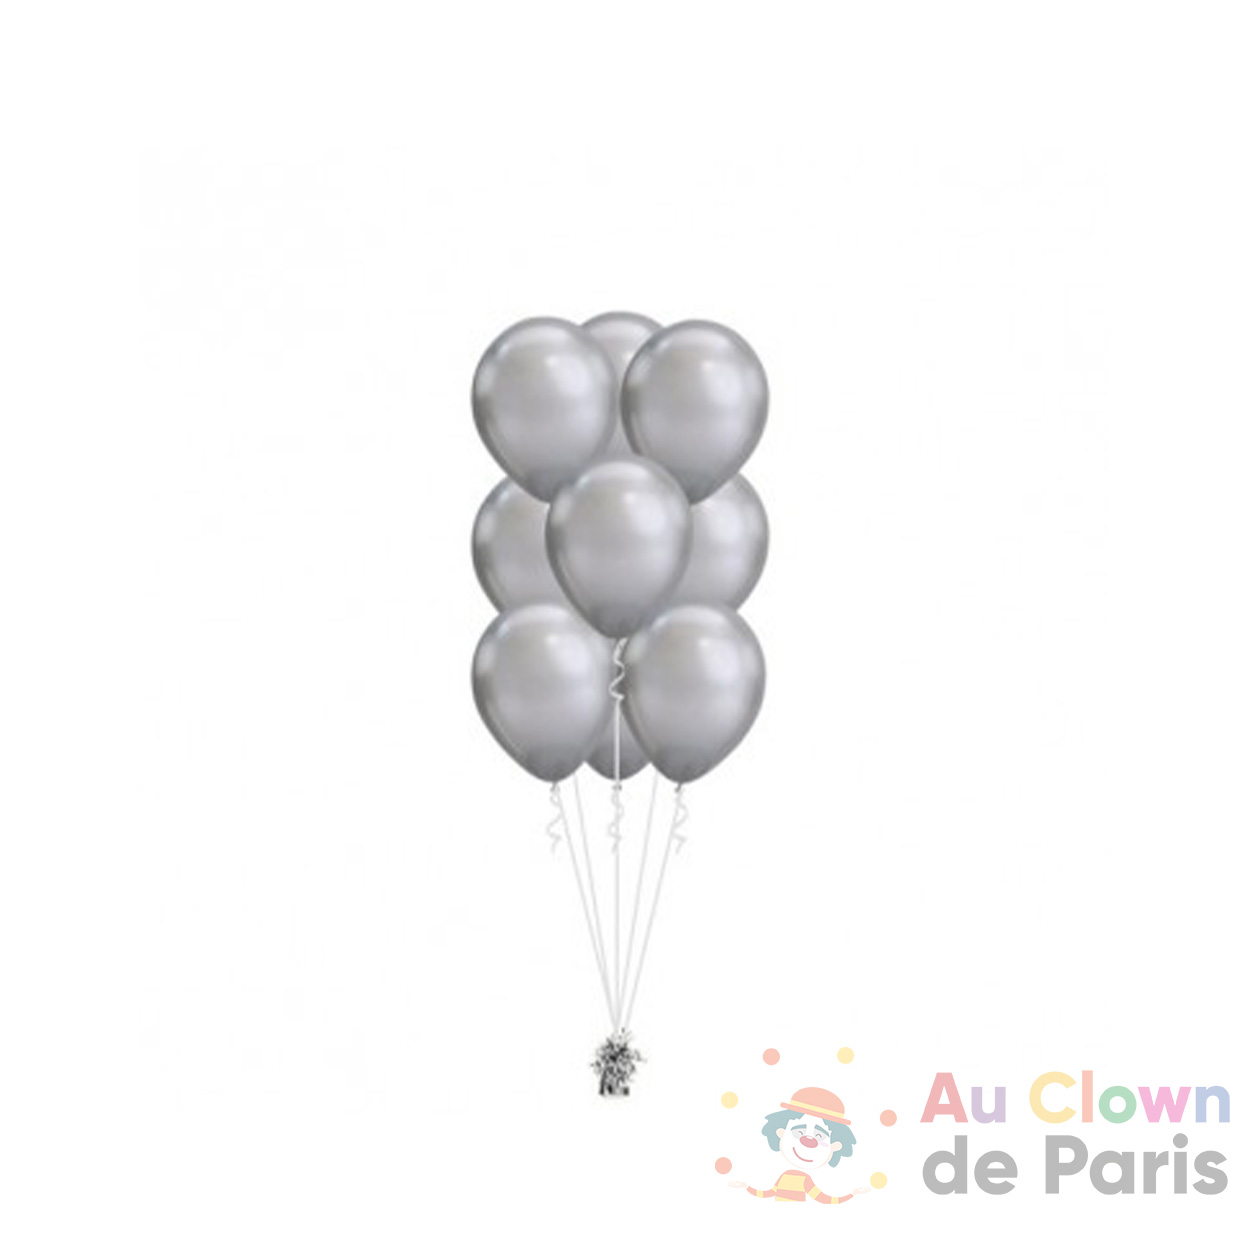 Ballons en argent chromé 30cm, Décoration Fête Ballons